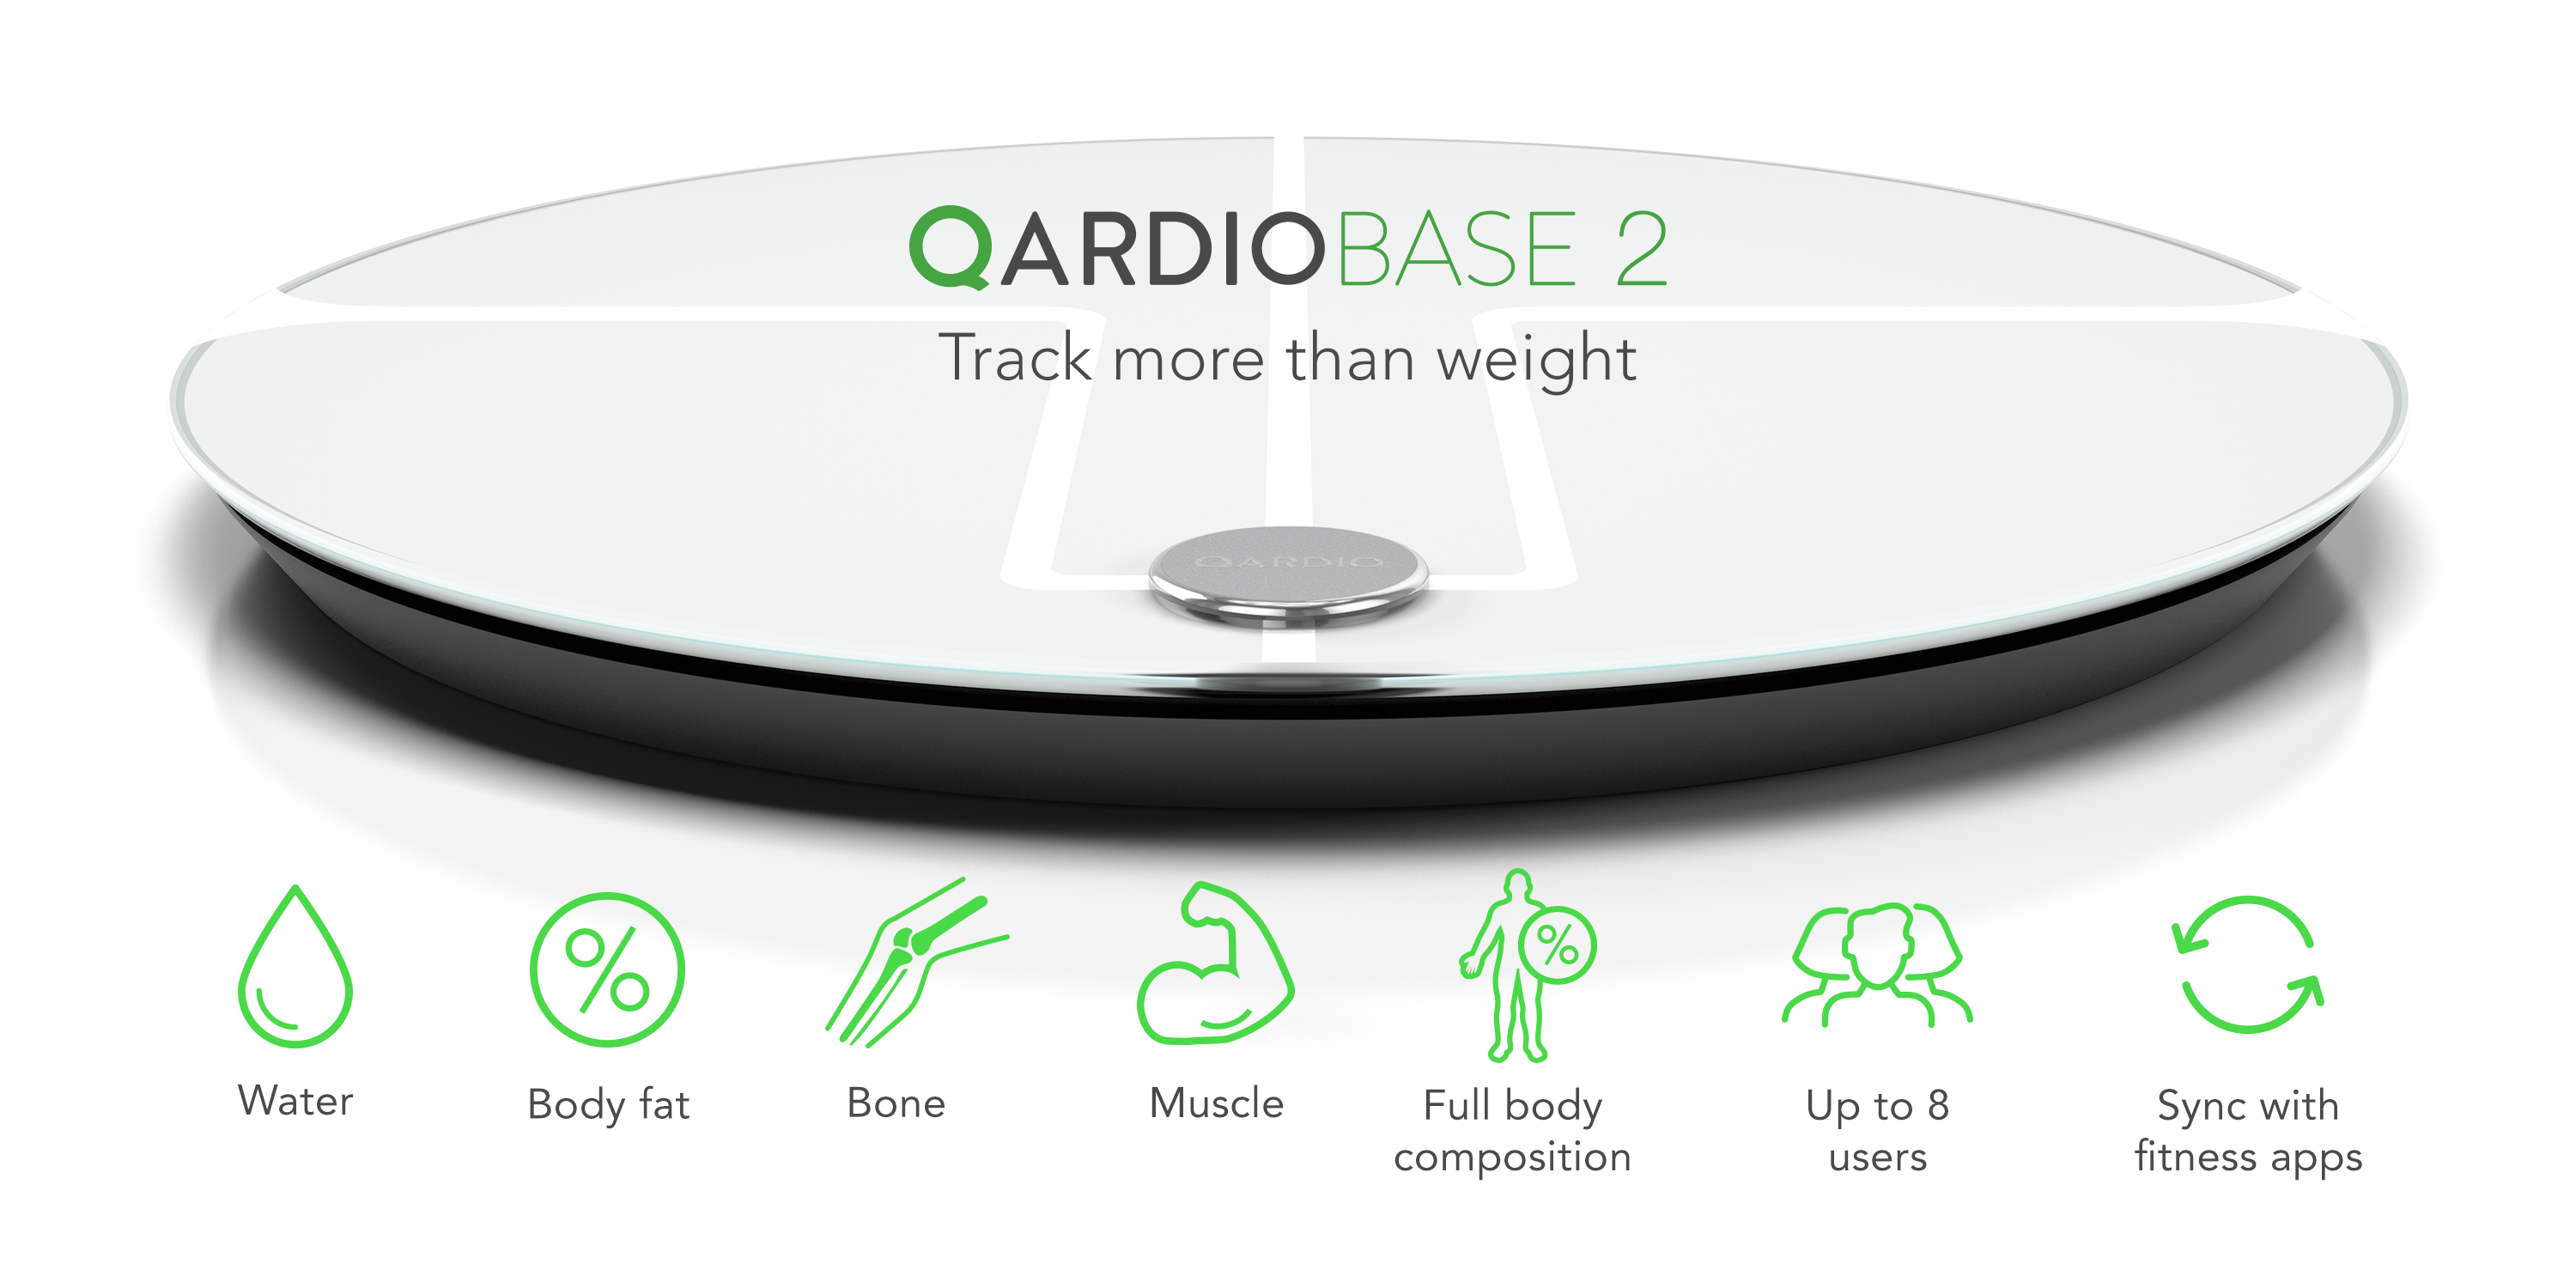 QardioBase 2 Wireless Smart Scale and Body Analyzer - Volcanic Black 